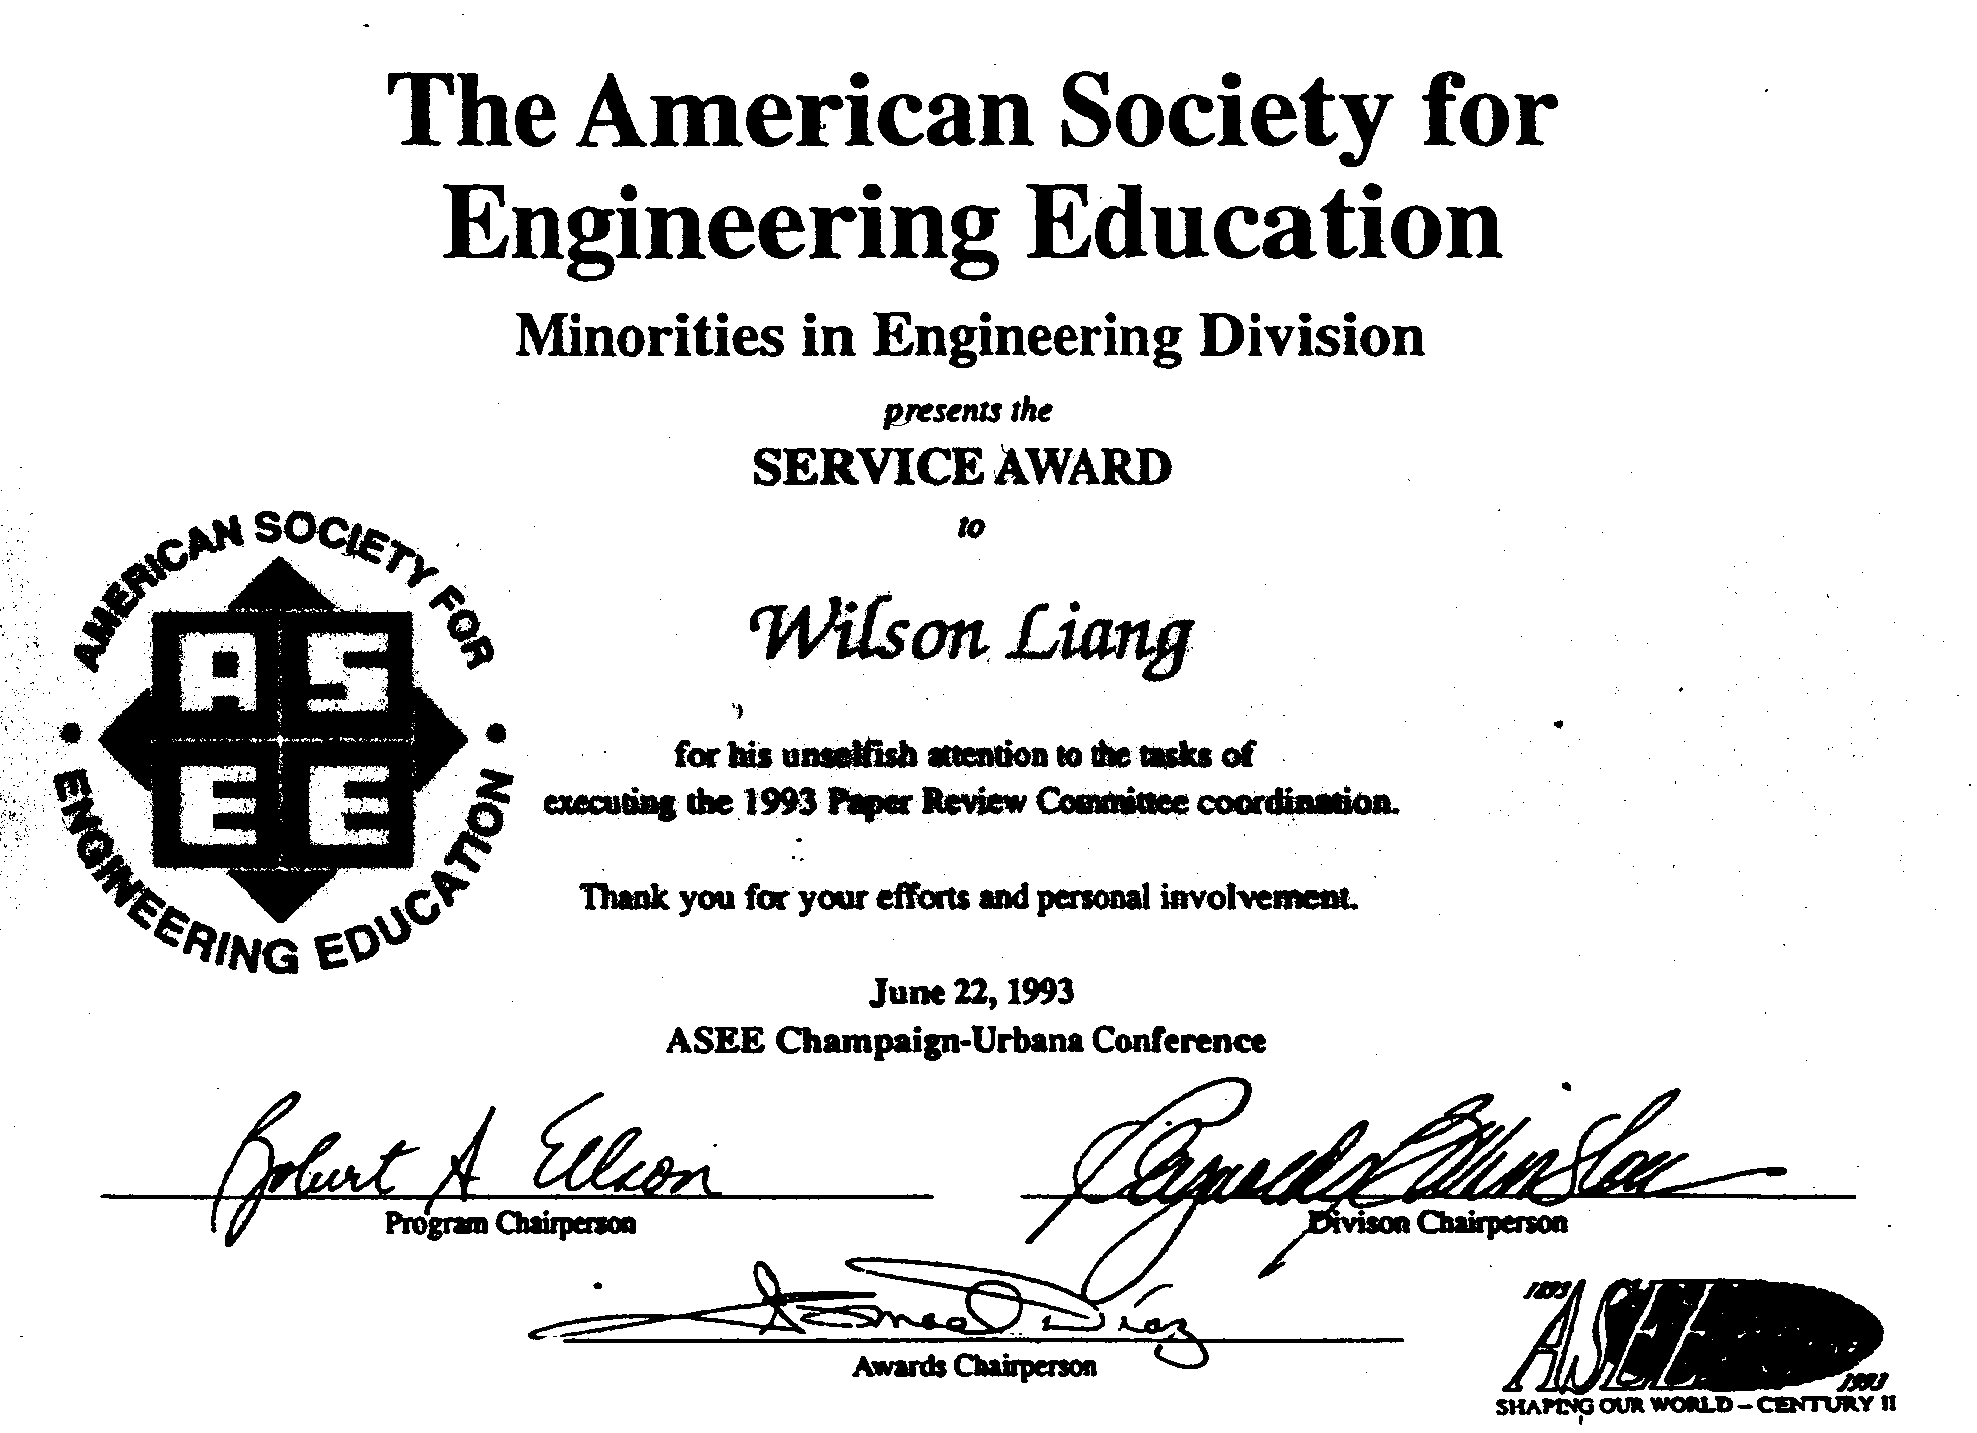 [A service award certificate]